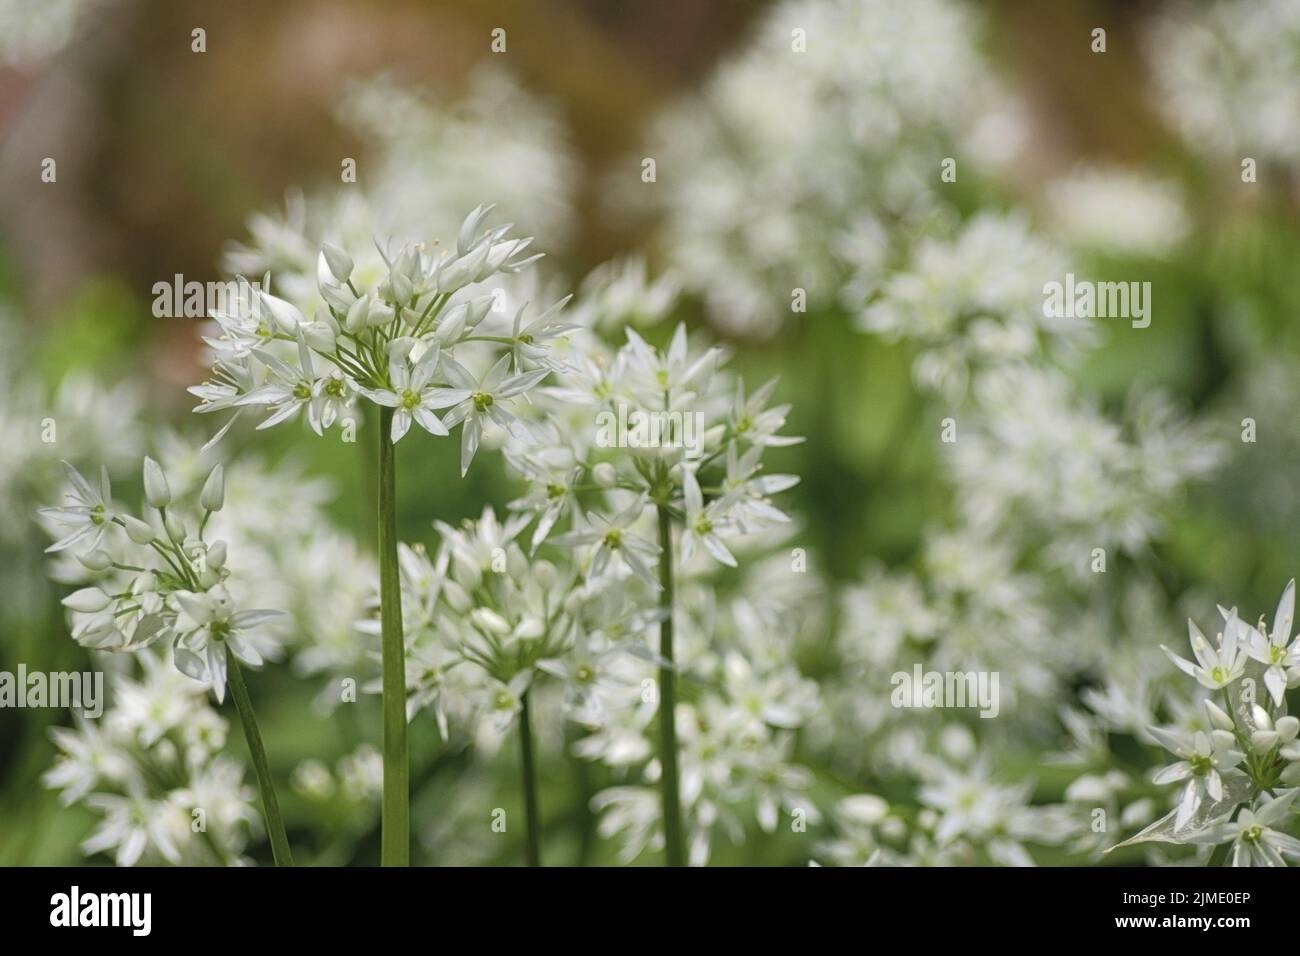 Allium ursinum (wild garlic, ramsons), Germany, Europe Stock Photo